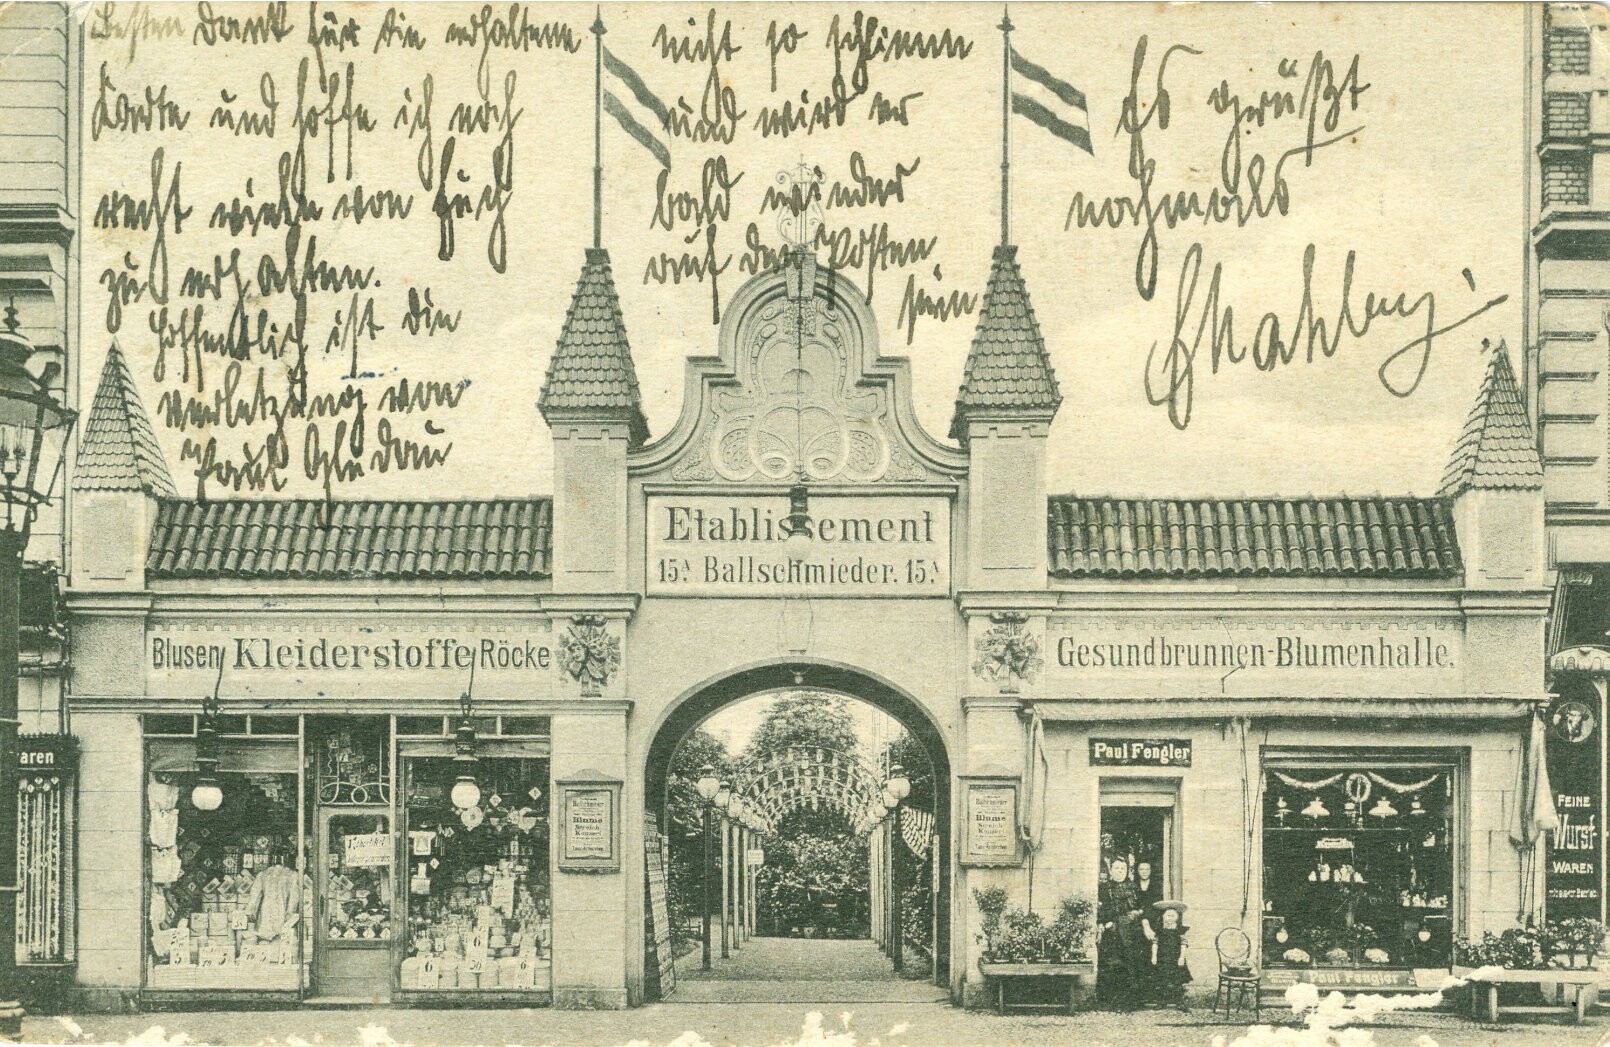 Ansichtskarte von Ballschmieder’s Etablissement (Mitte Museum/Bezirksamt Mitte von Berlin CC BY-NC-SA)